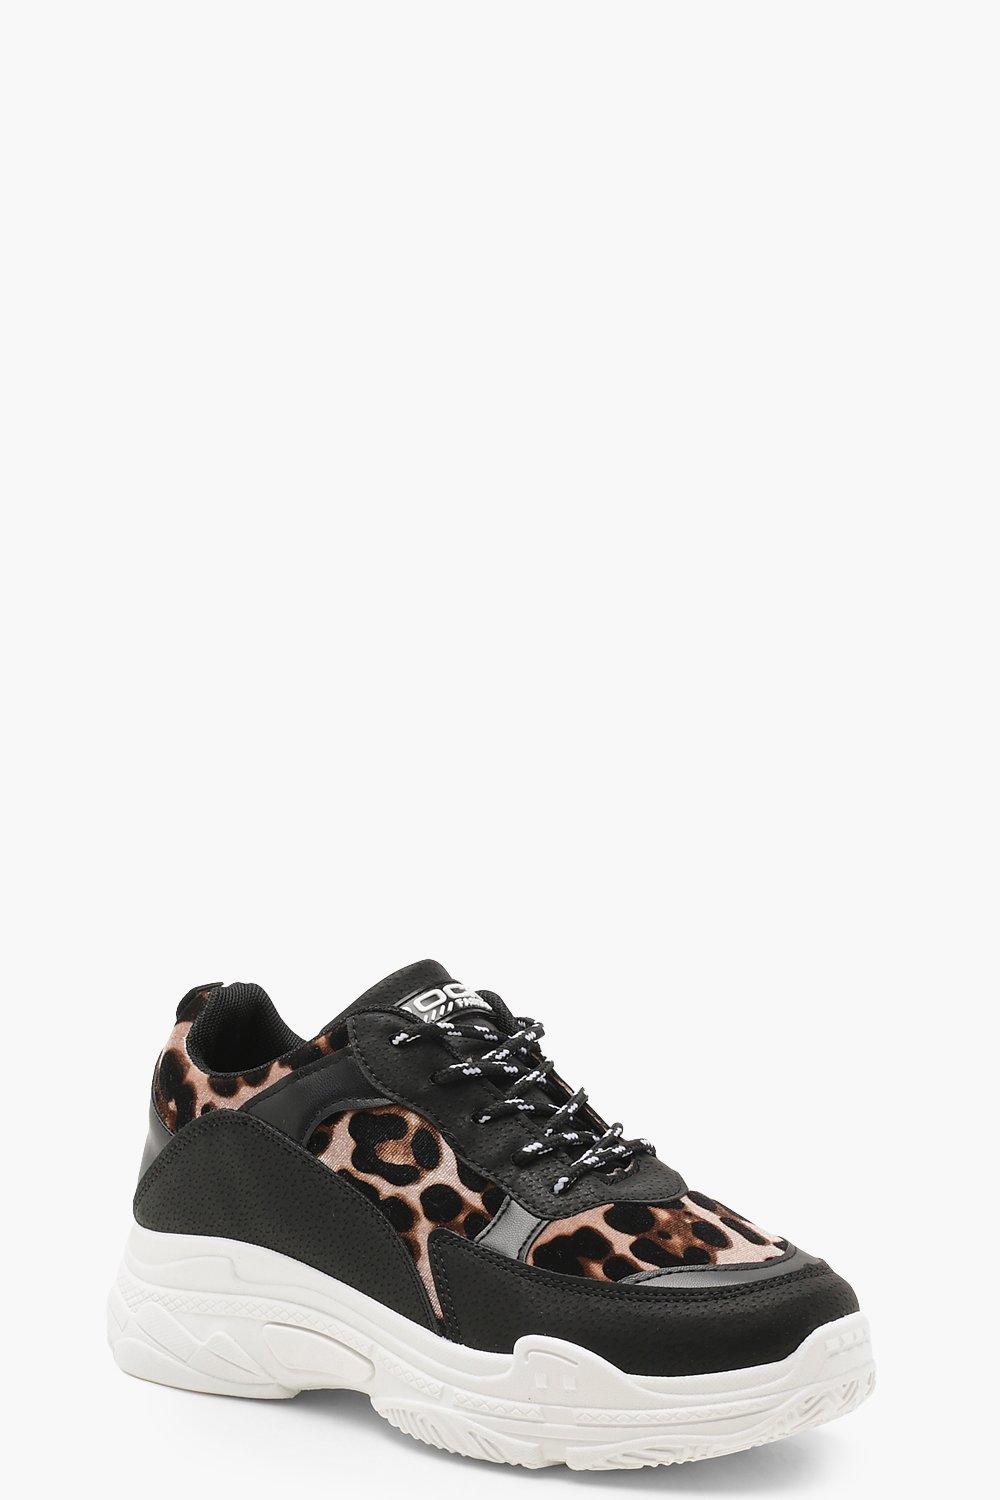 leopard sole sneakers